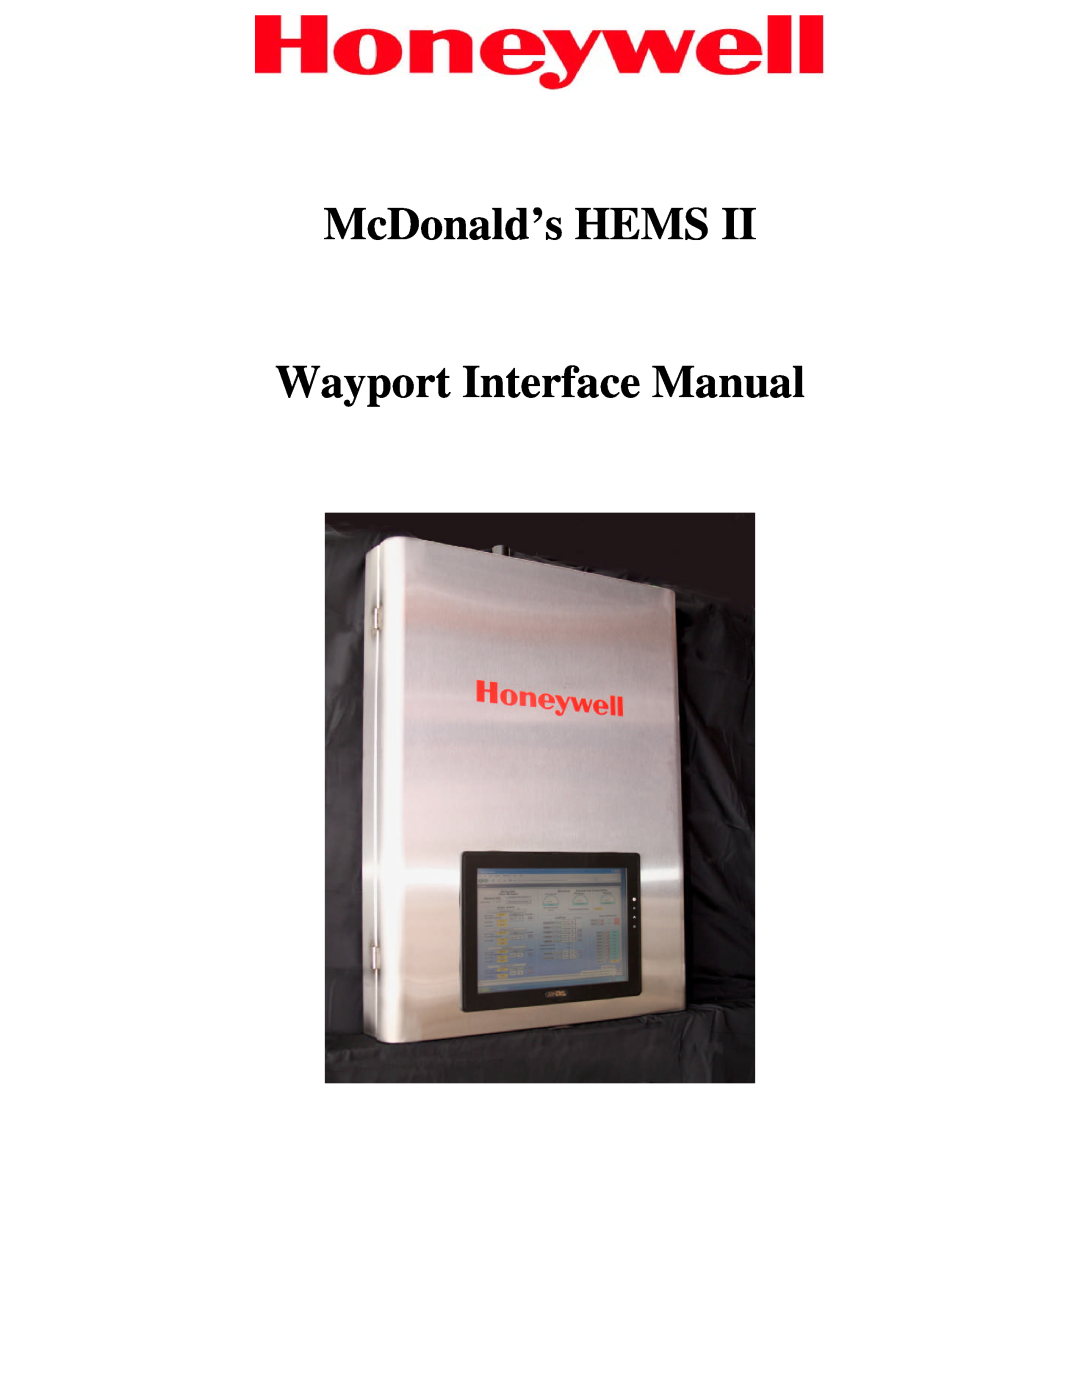 Honeywell HEMS II manual McDonald’s HEMS Wayport Interface Manual 